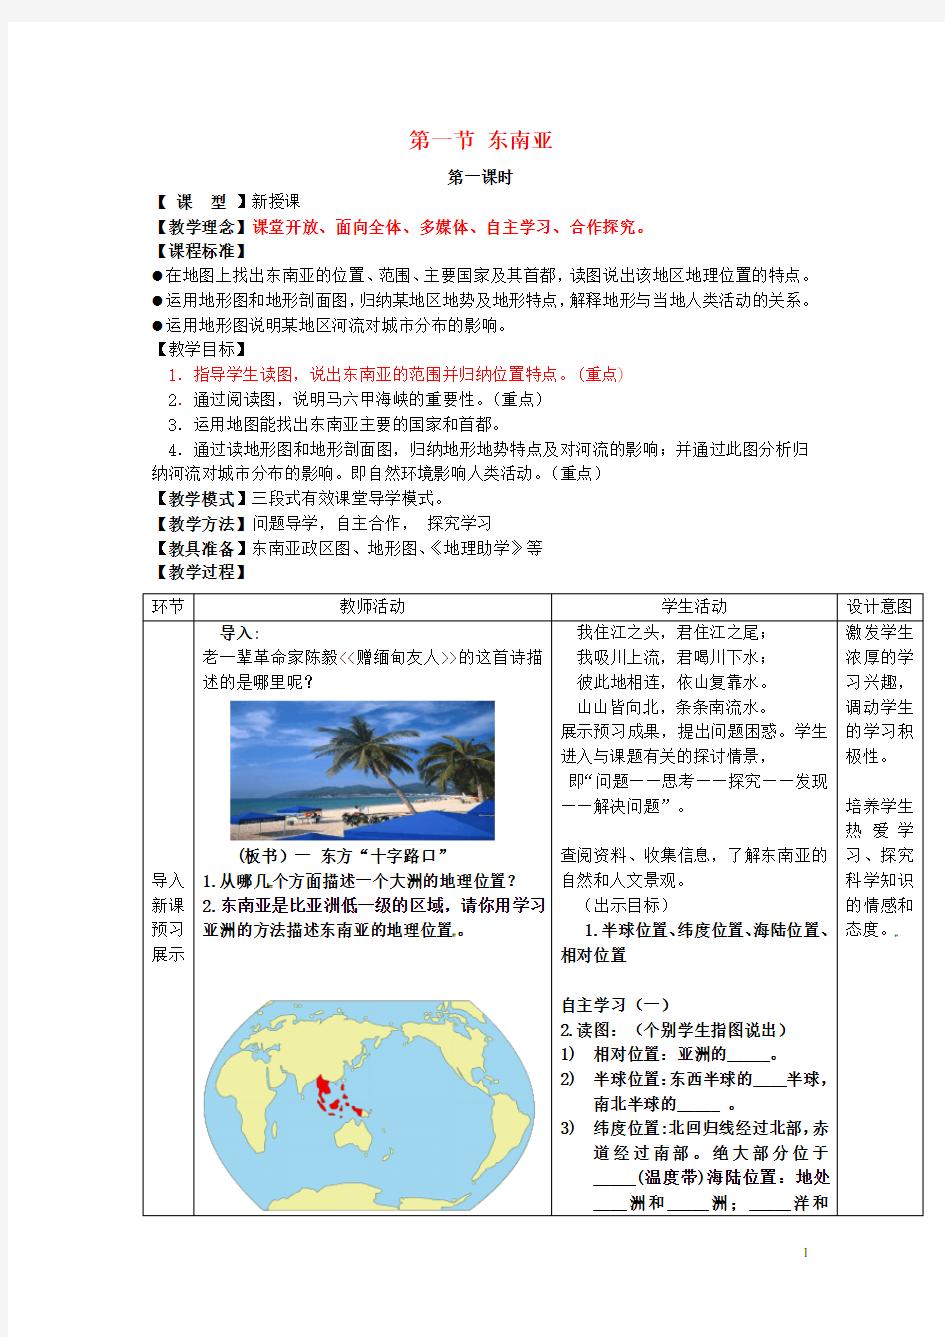 七年级地理下册 7.1 东南亚教案 (新版)商务星球版 